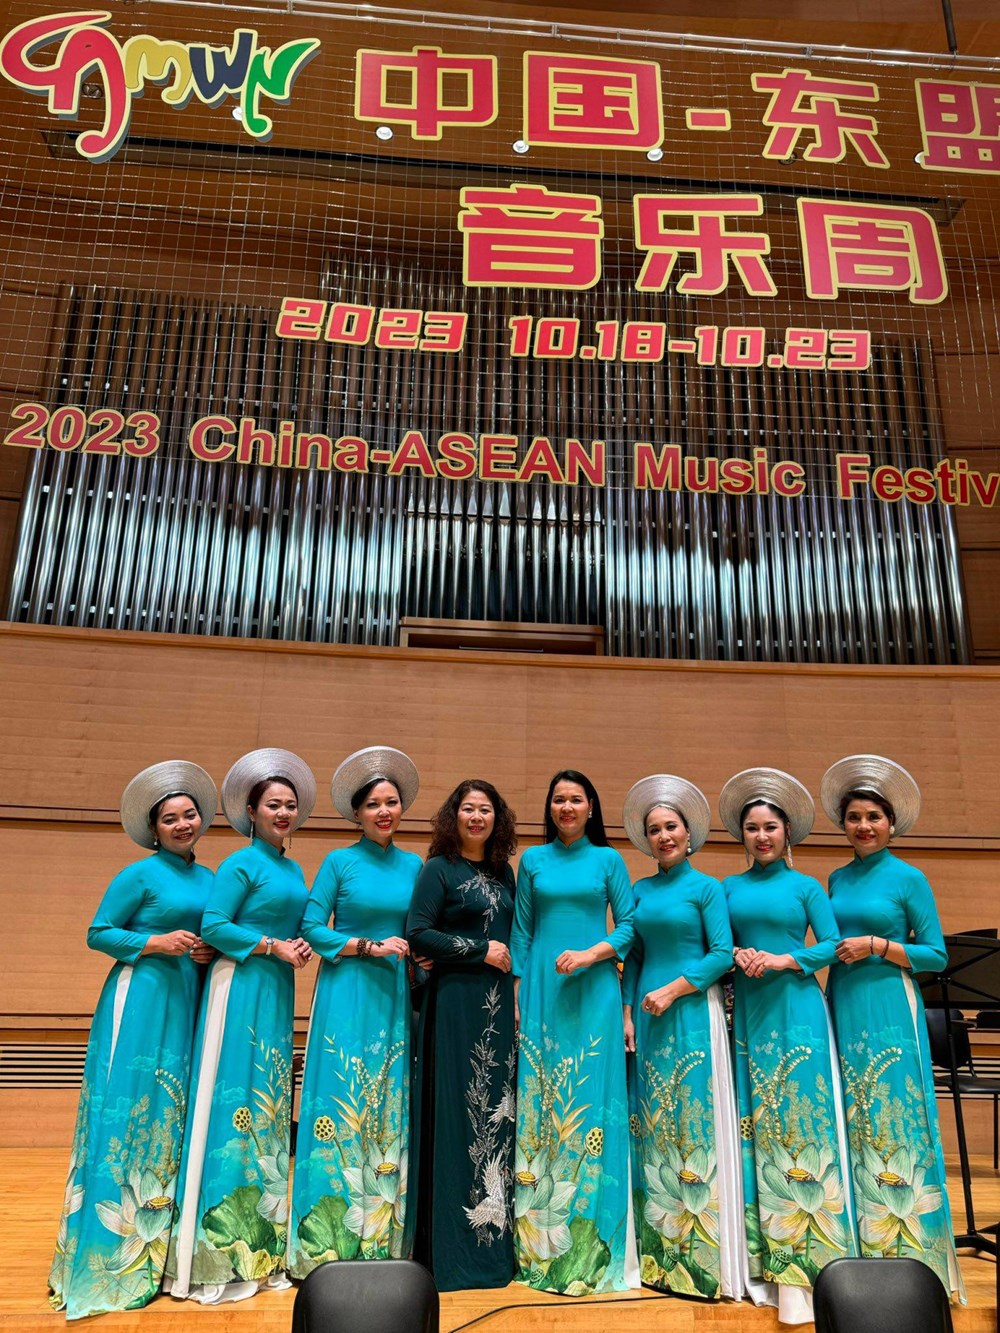 Dàn nhạc Dân tộc Việt Nam biểu diễn 9  tác phẩm tại Festival Âm nhạc Trung Quốc - ASEAN 2023 - ảnh 4